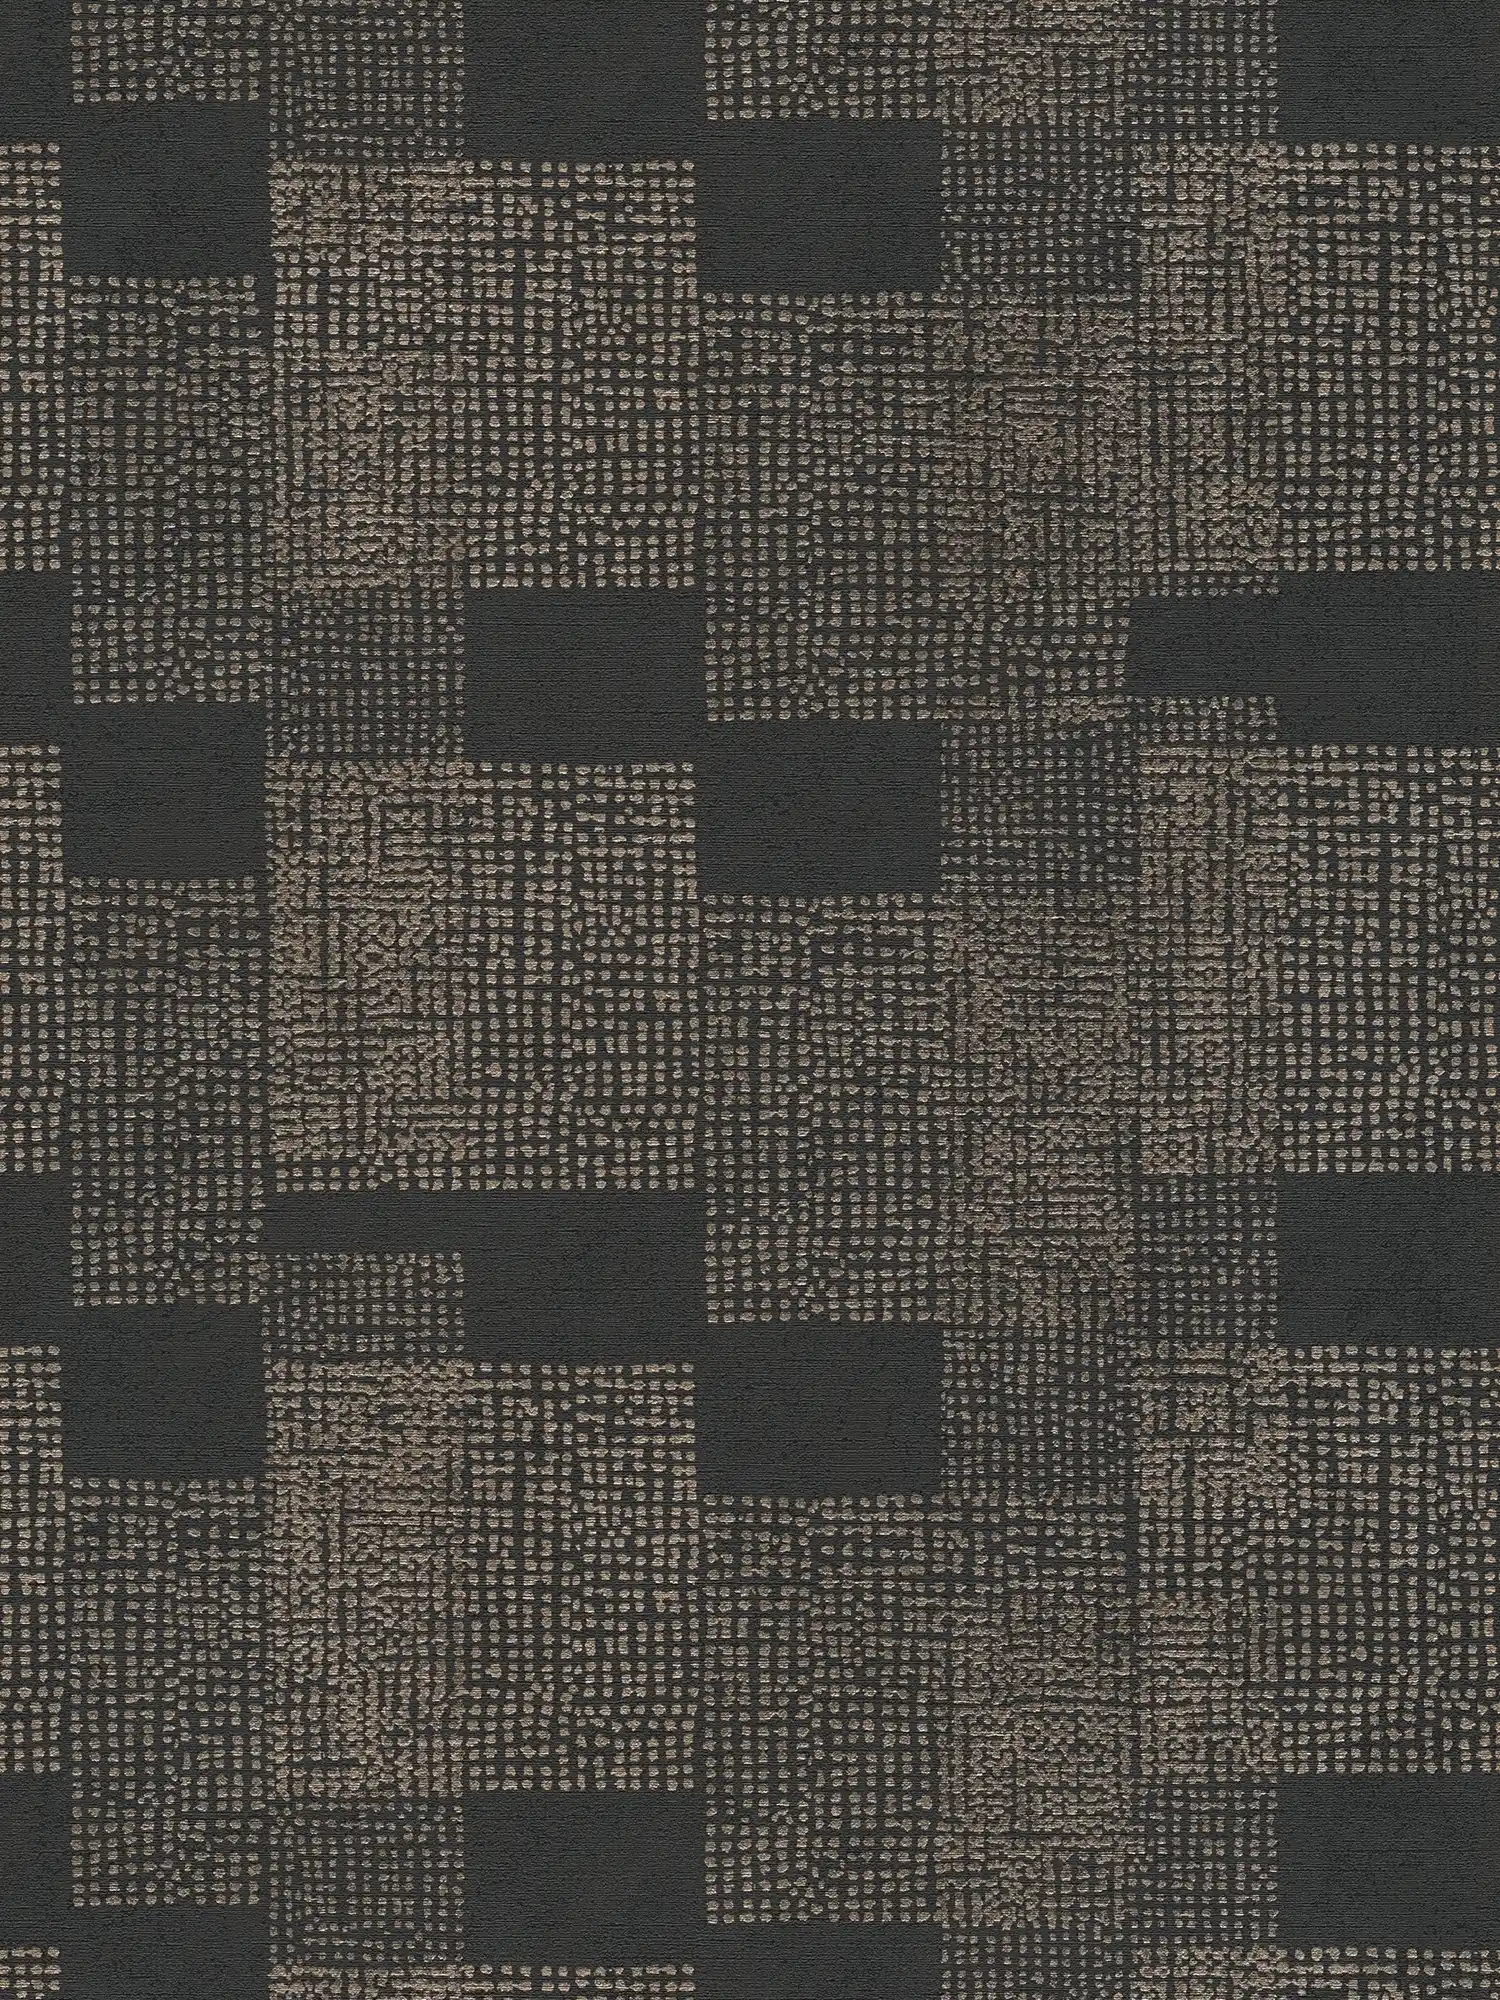 Pattern wallpaper ethnic design - black, grey, metallic
